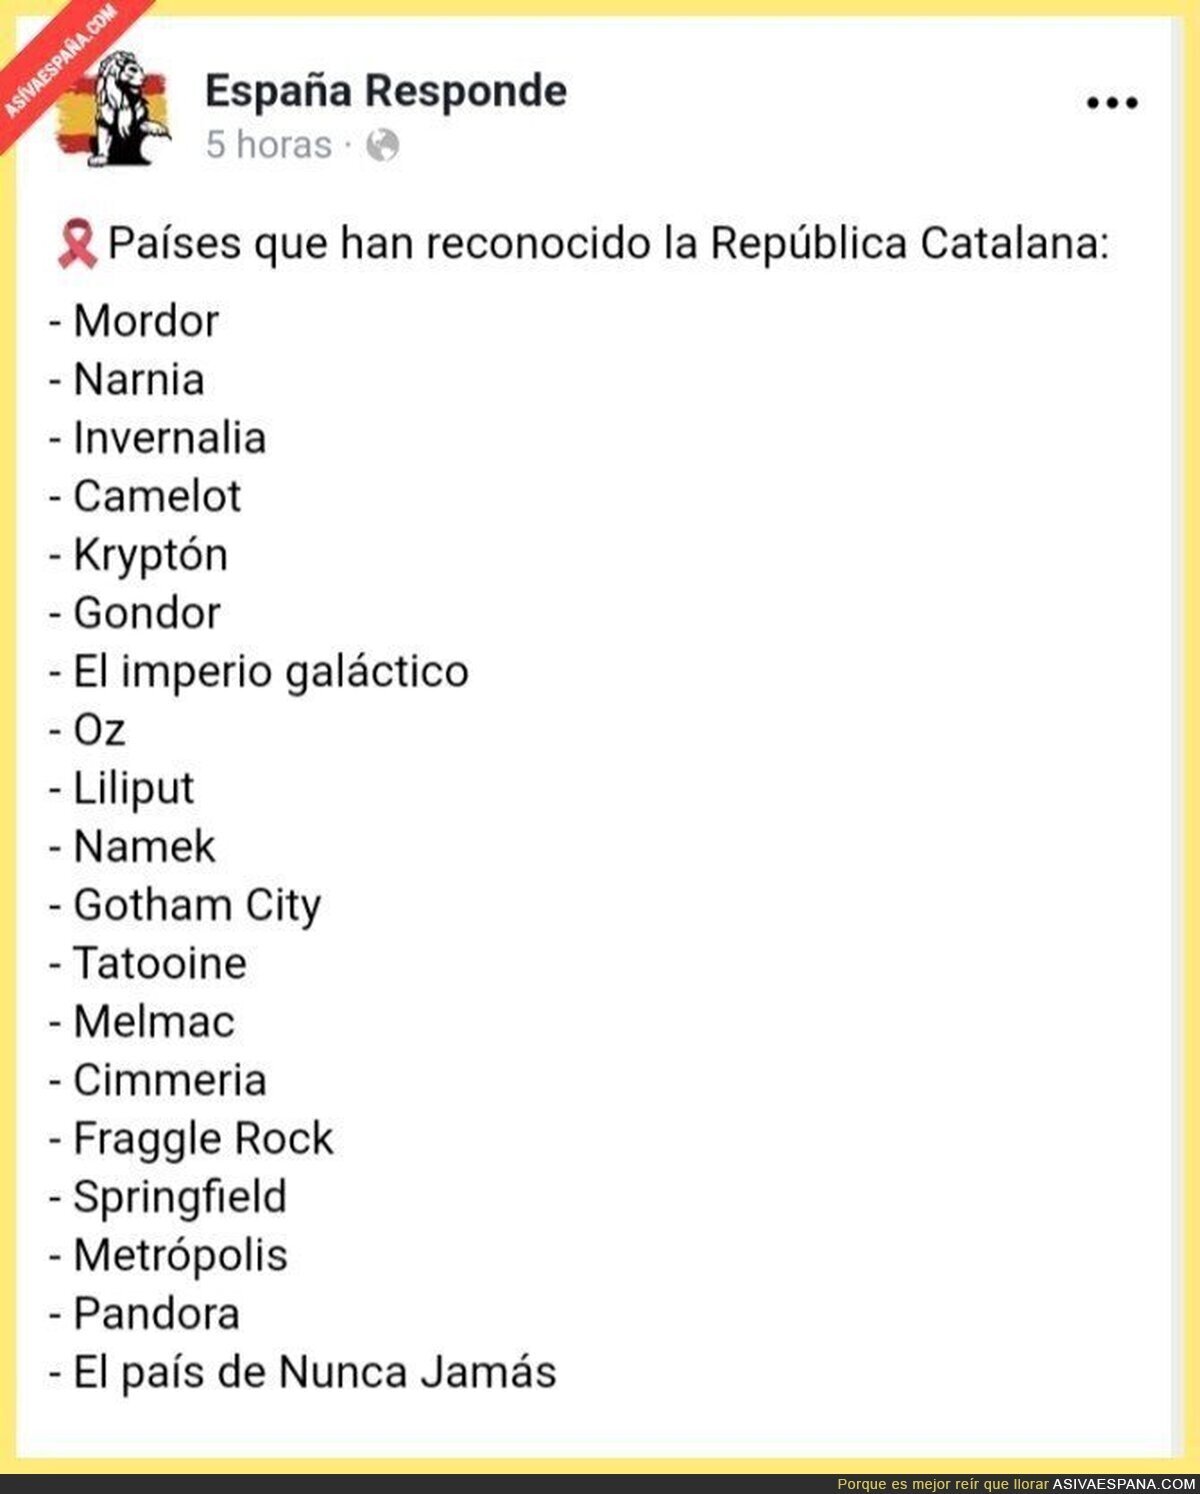 Países que han reconocido la respública catalana